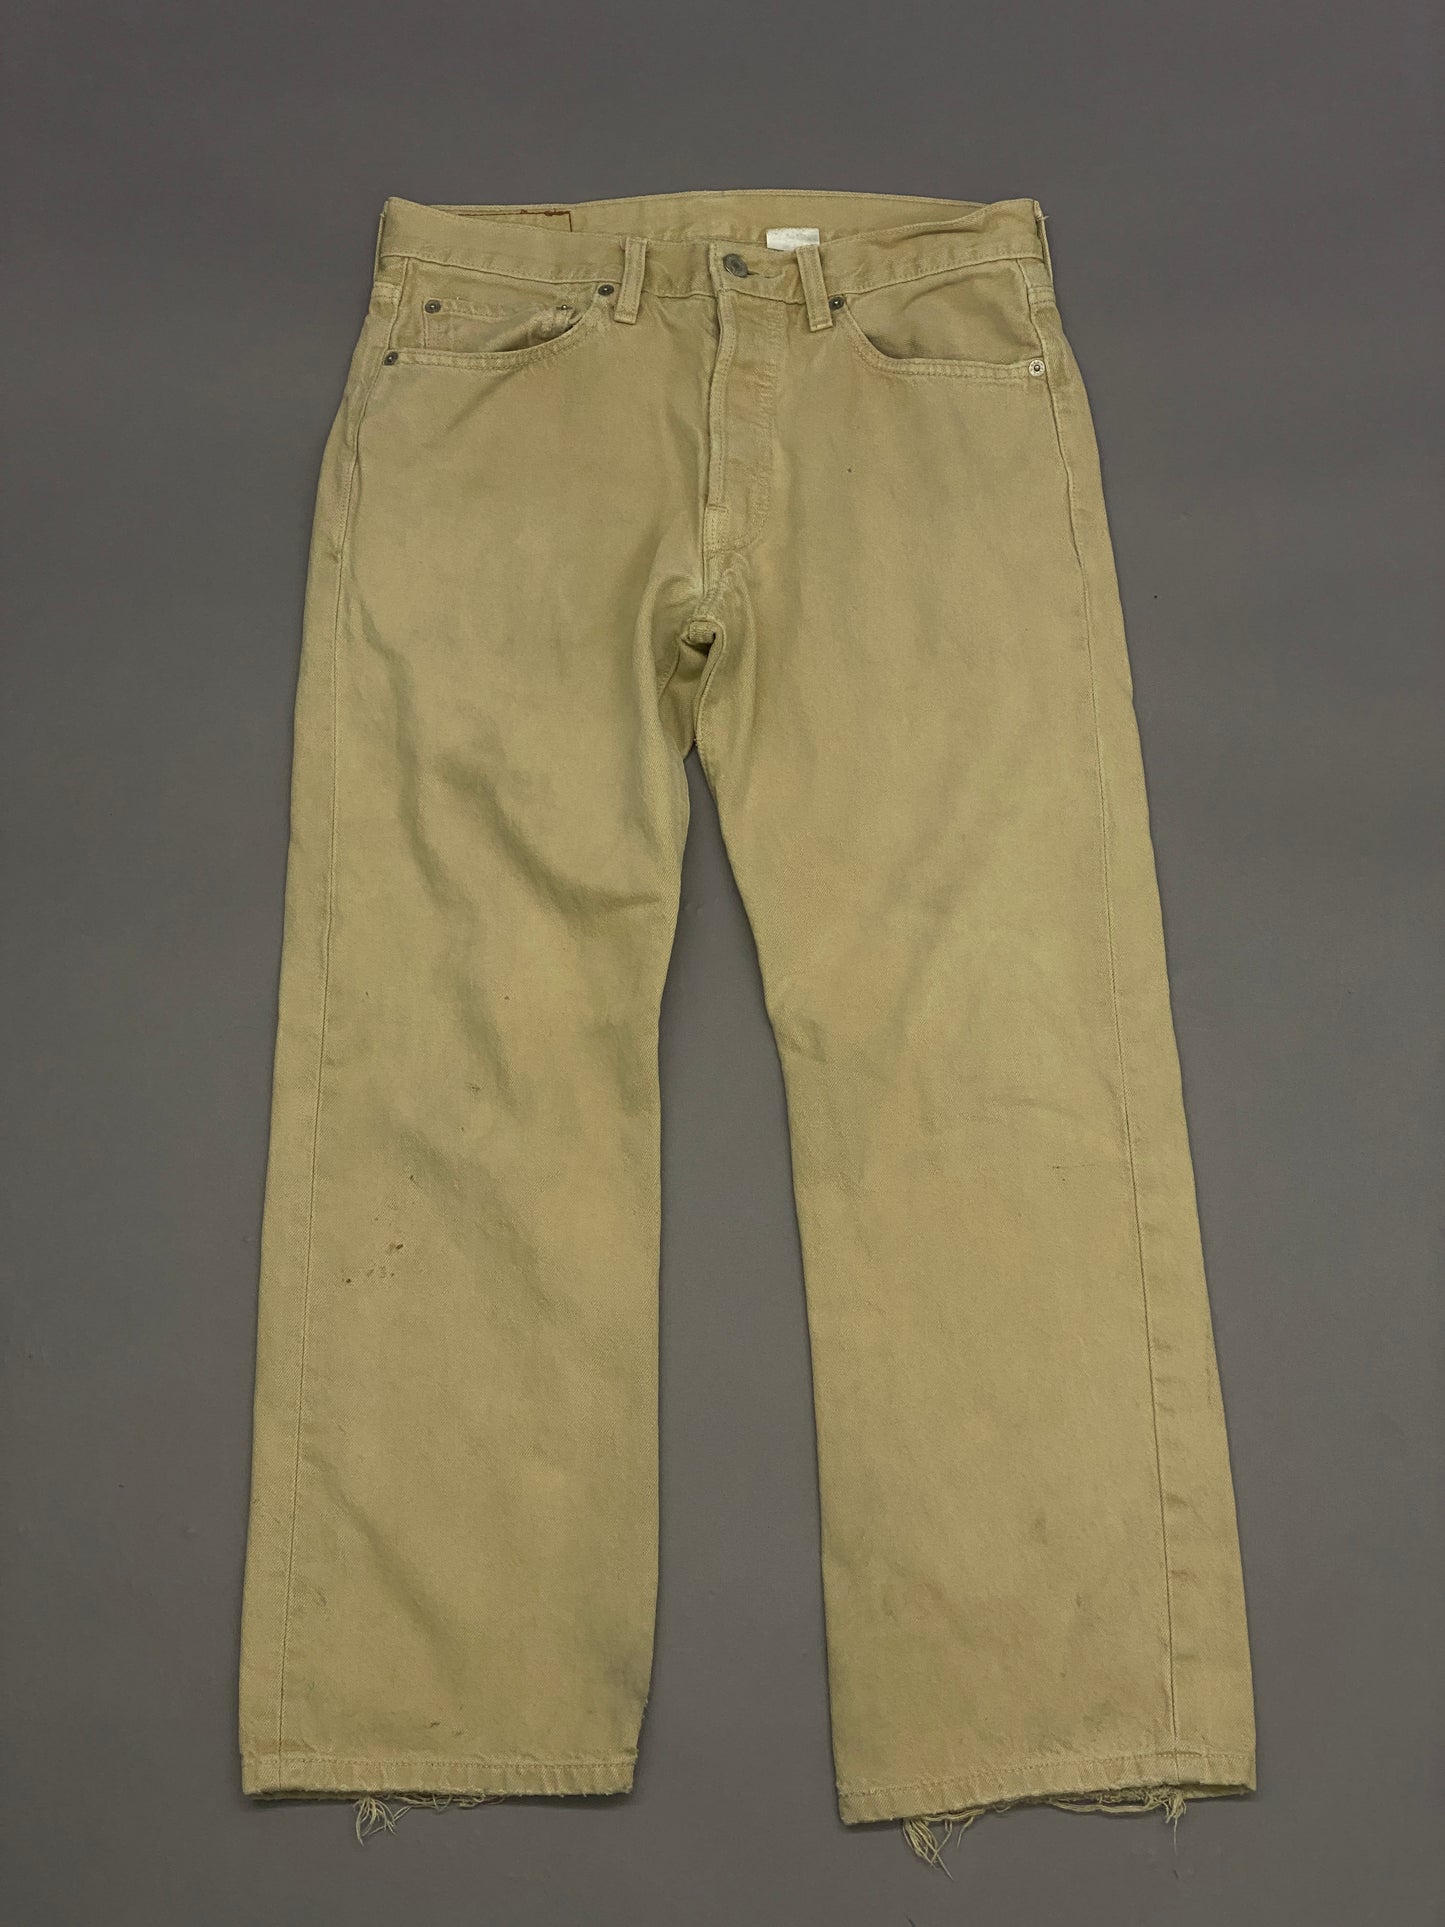 Jeans Levis 501 Vintage - 32 x 29